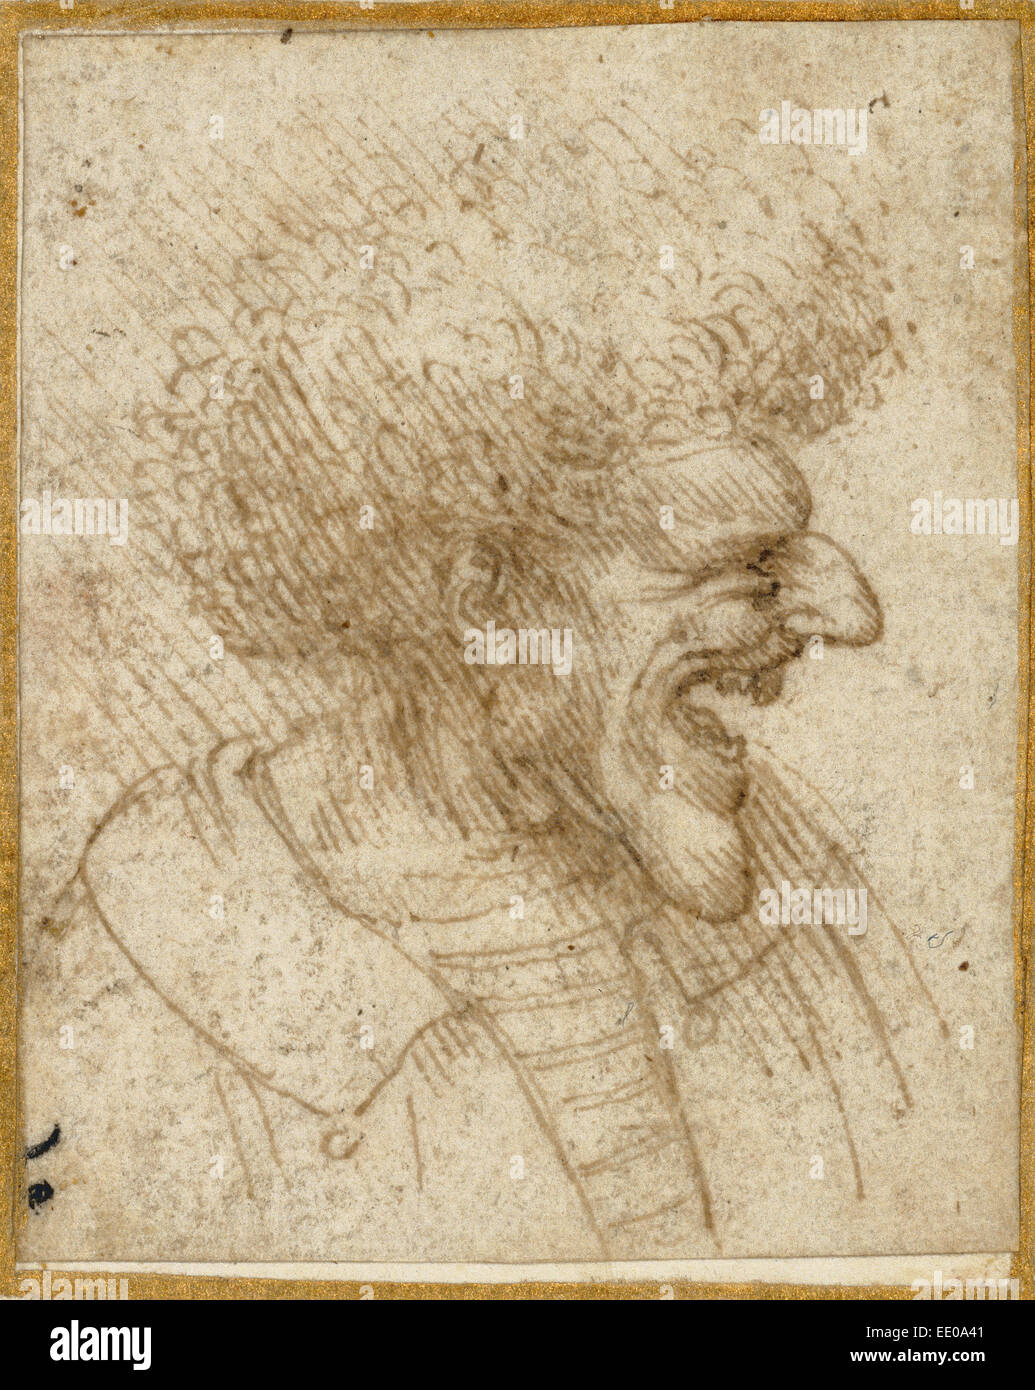 Caricature d'un homme avec des cheveux touffus ; Leonardo da Vinci, Italien, 1452 - 1519 ; environ 1495 Plume et encre brune. Banque D'Images